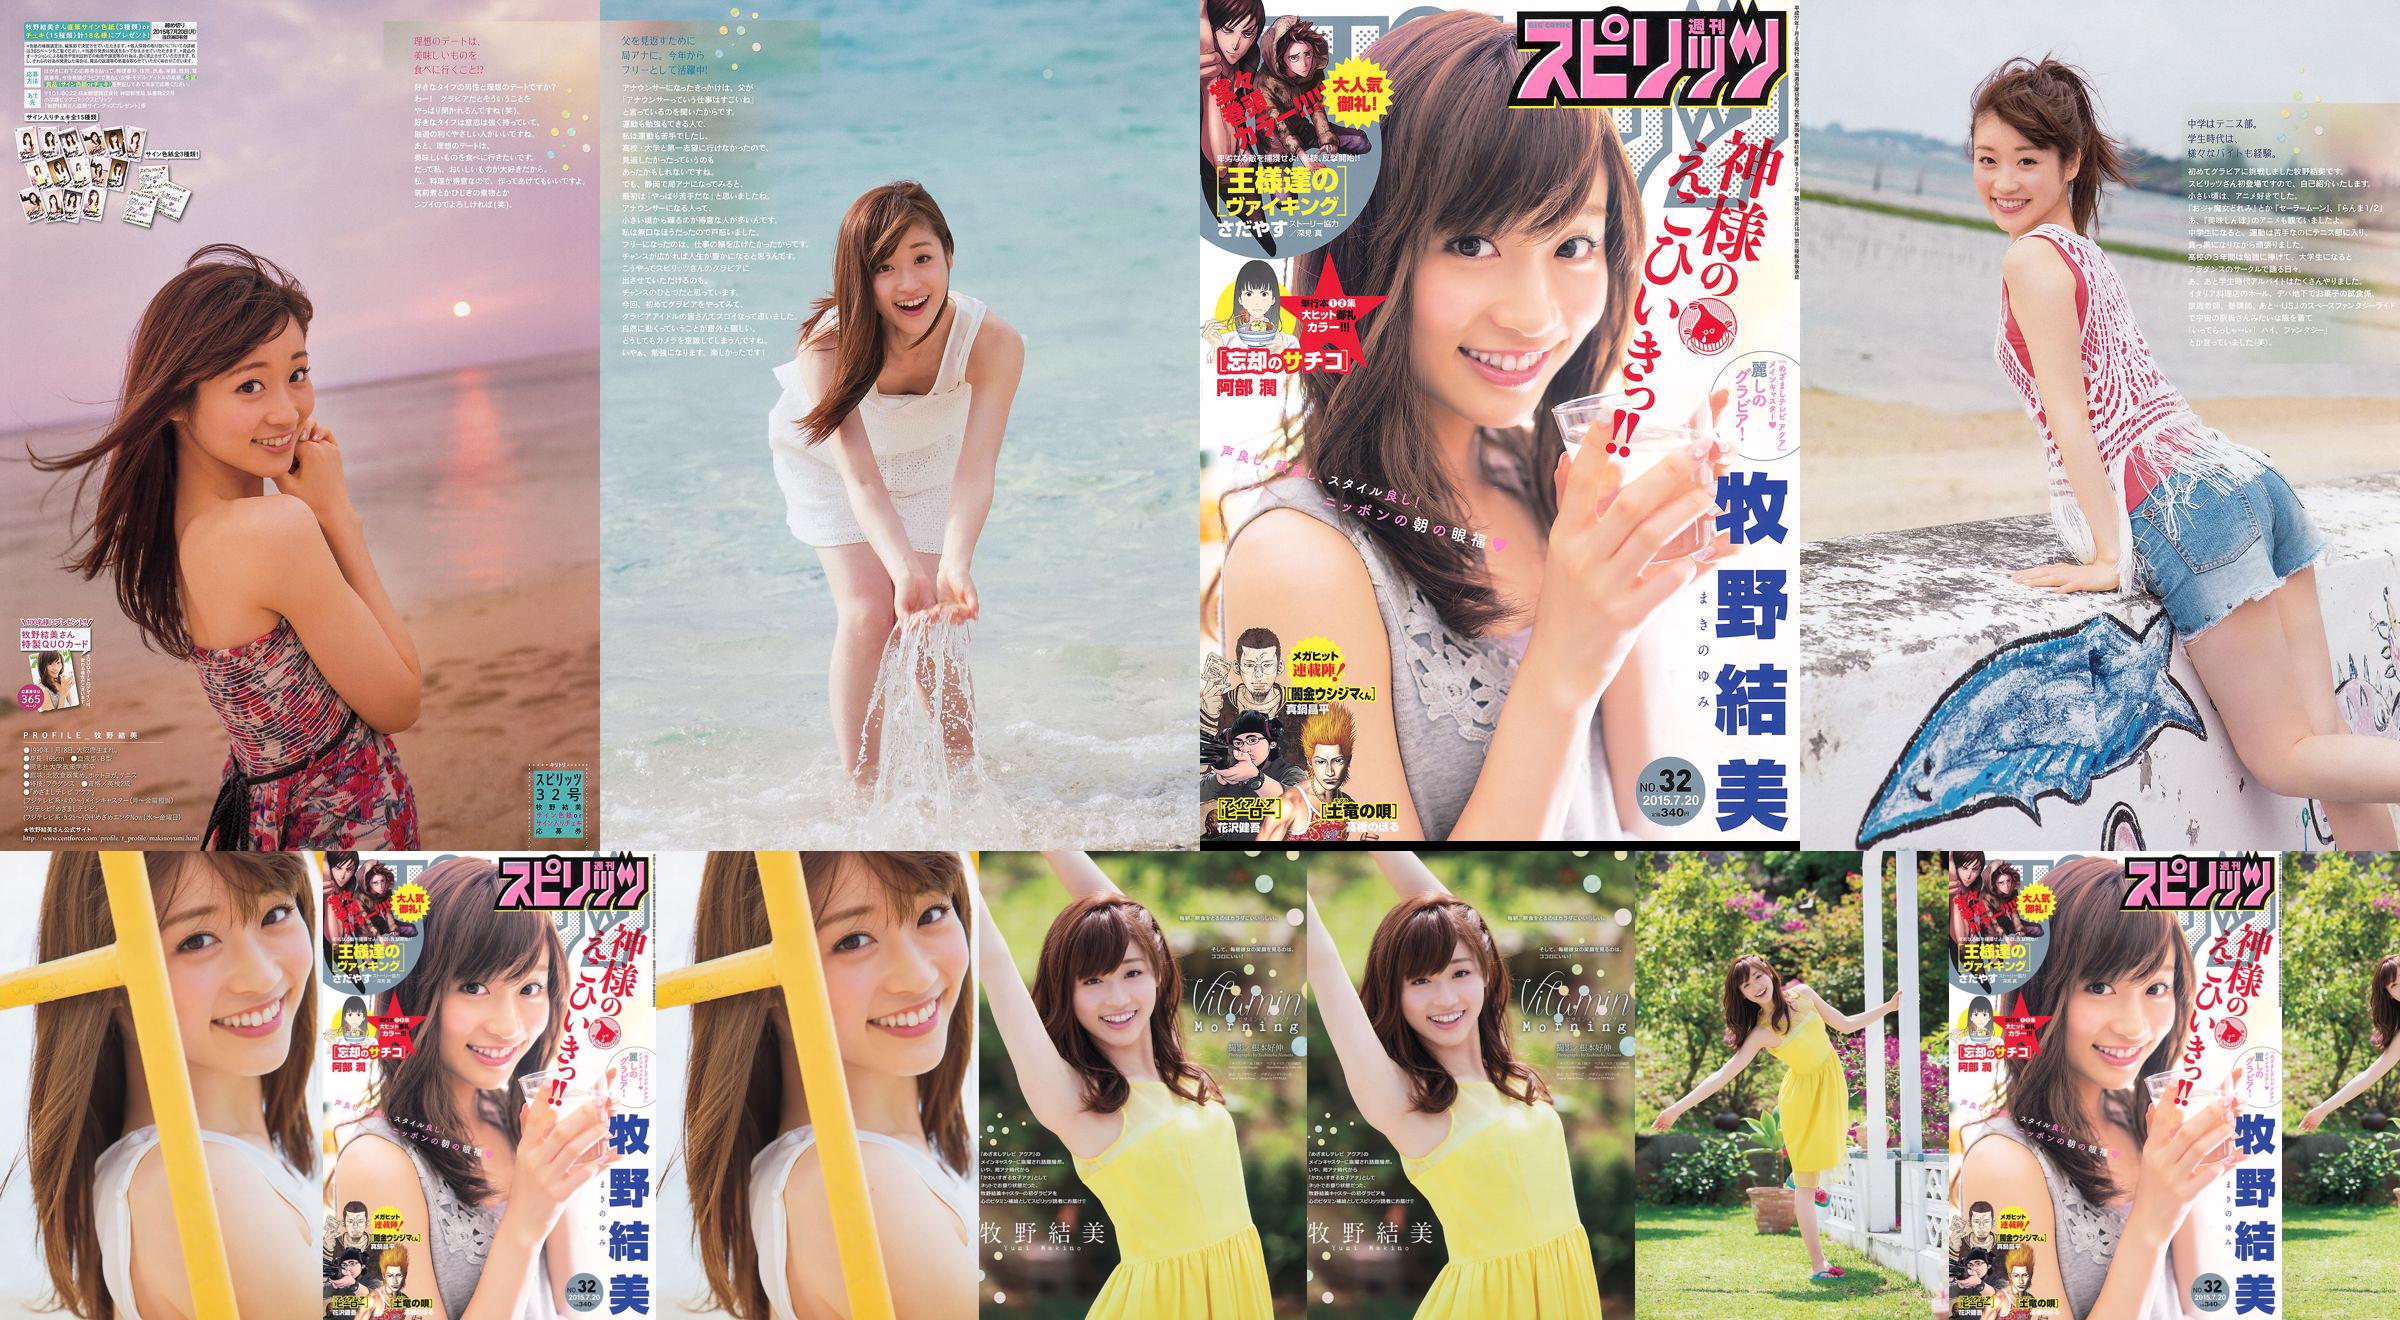 [Weekly Big Comic Spirits] Yumi Makino 2015 No.32 Photo Magazine No.4475fe Pagina 1